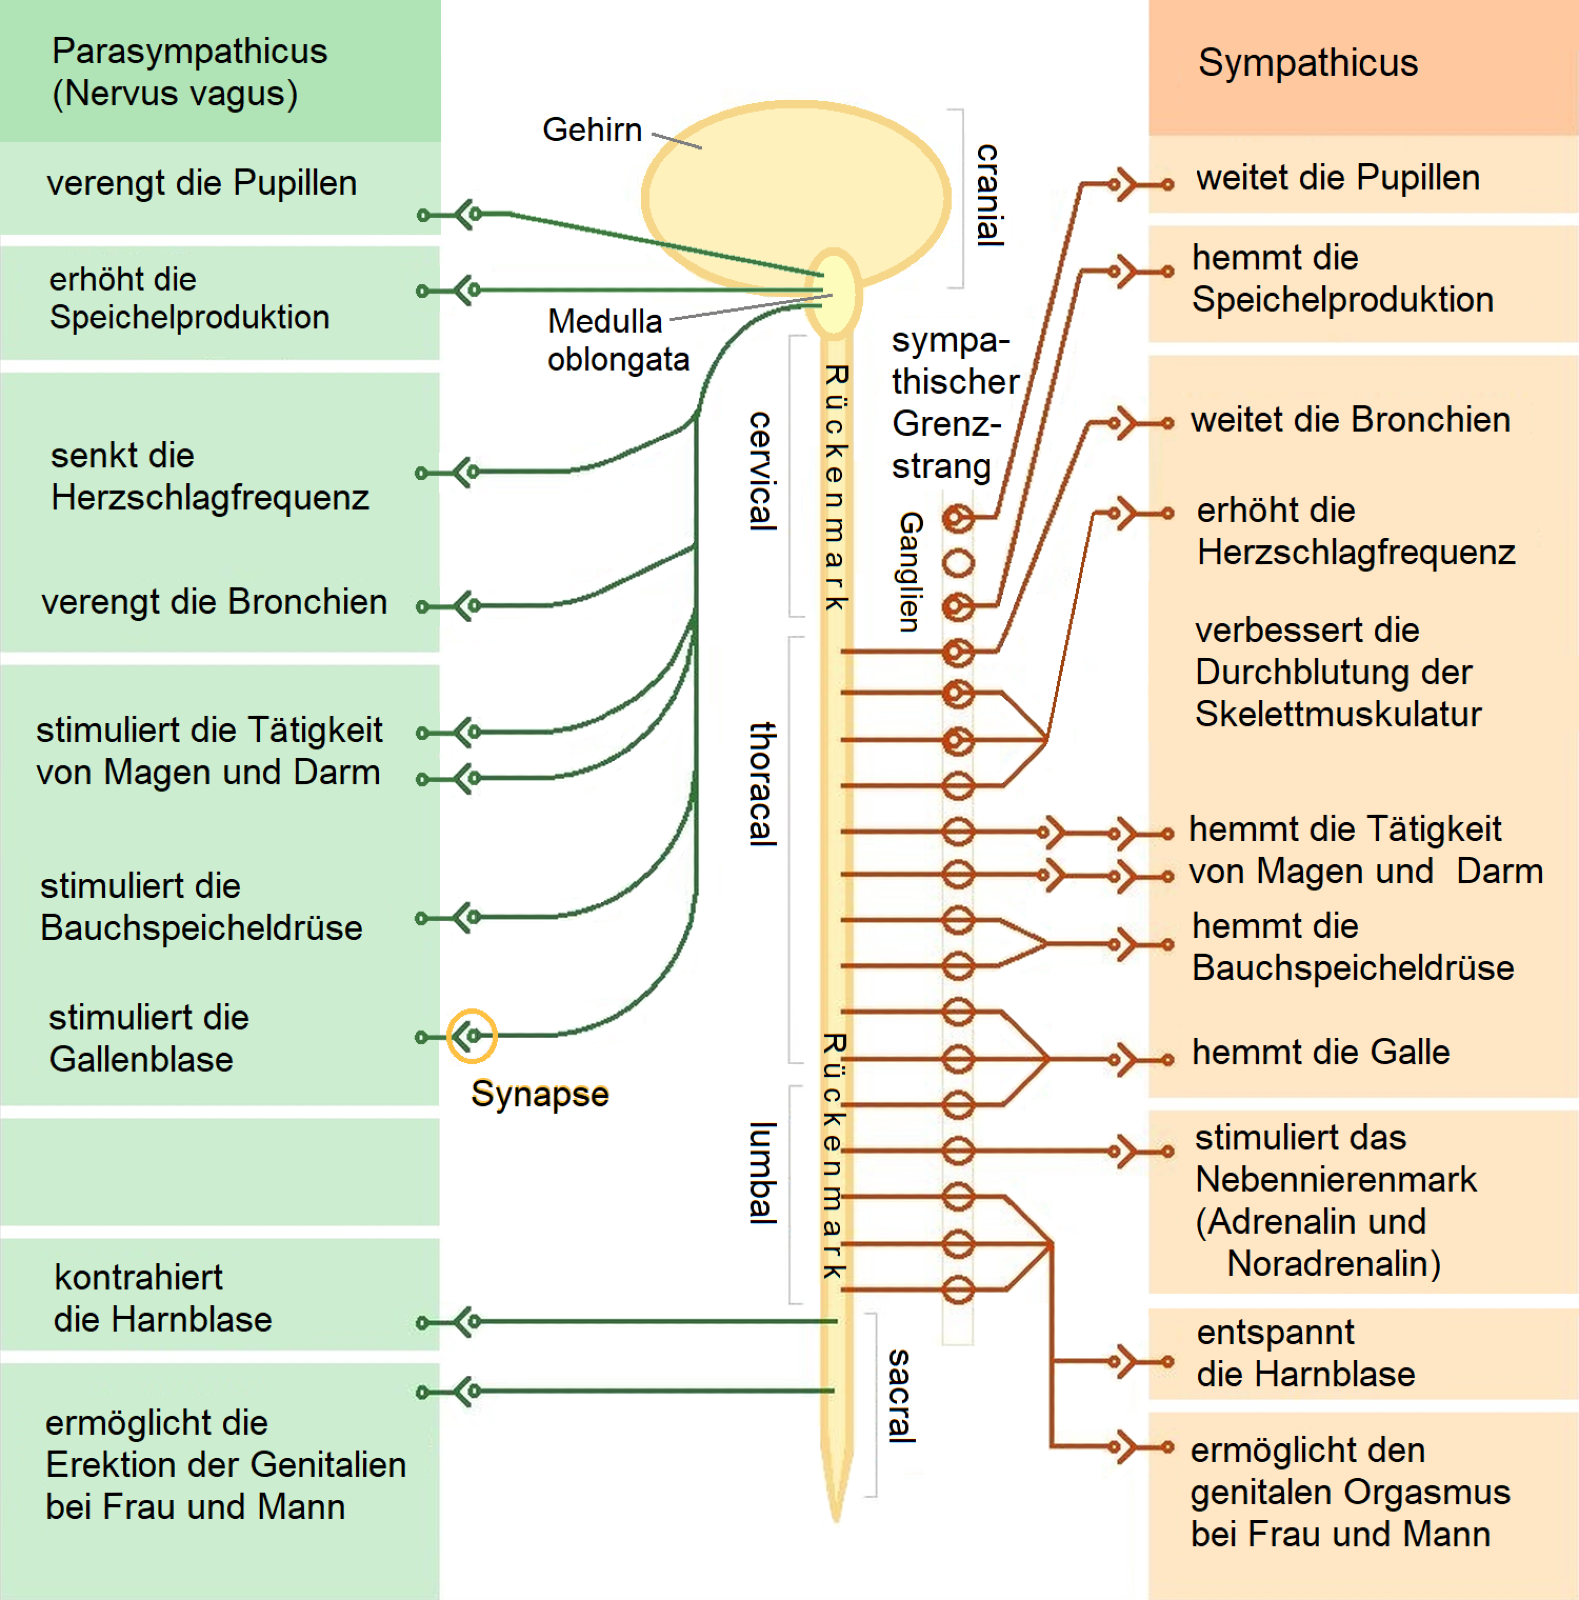 The-vegetative-nervous-system